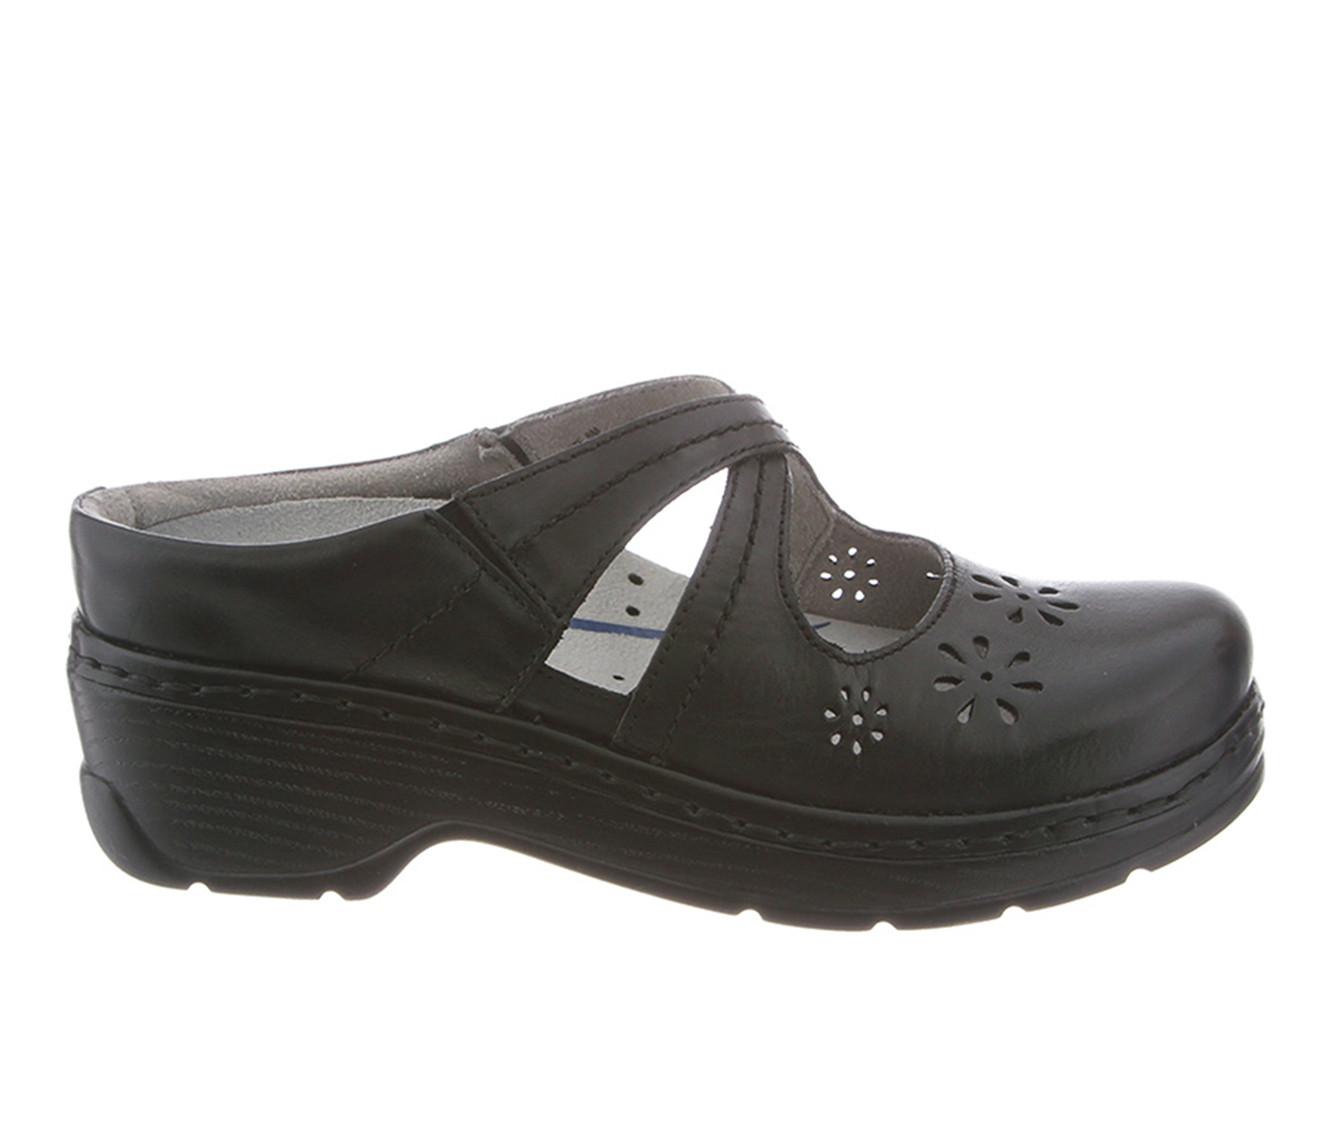 Women's KLOGS Footwear Carolina Slip Resistant Shoes